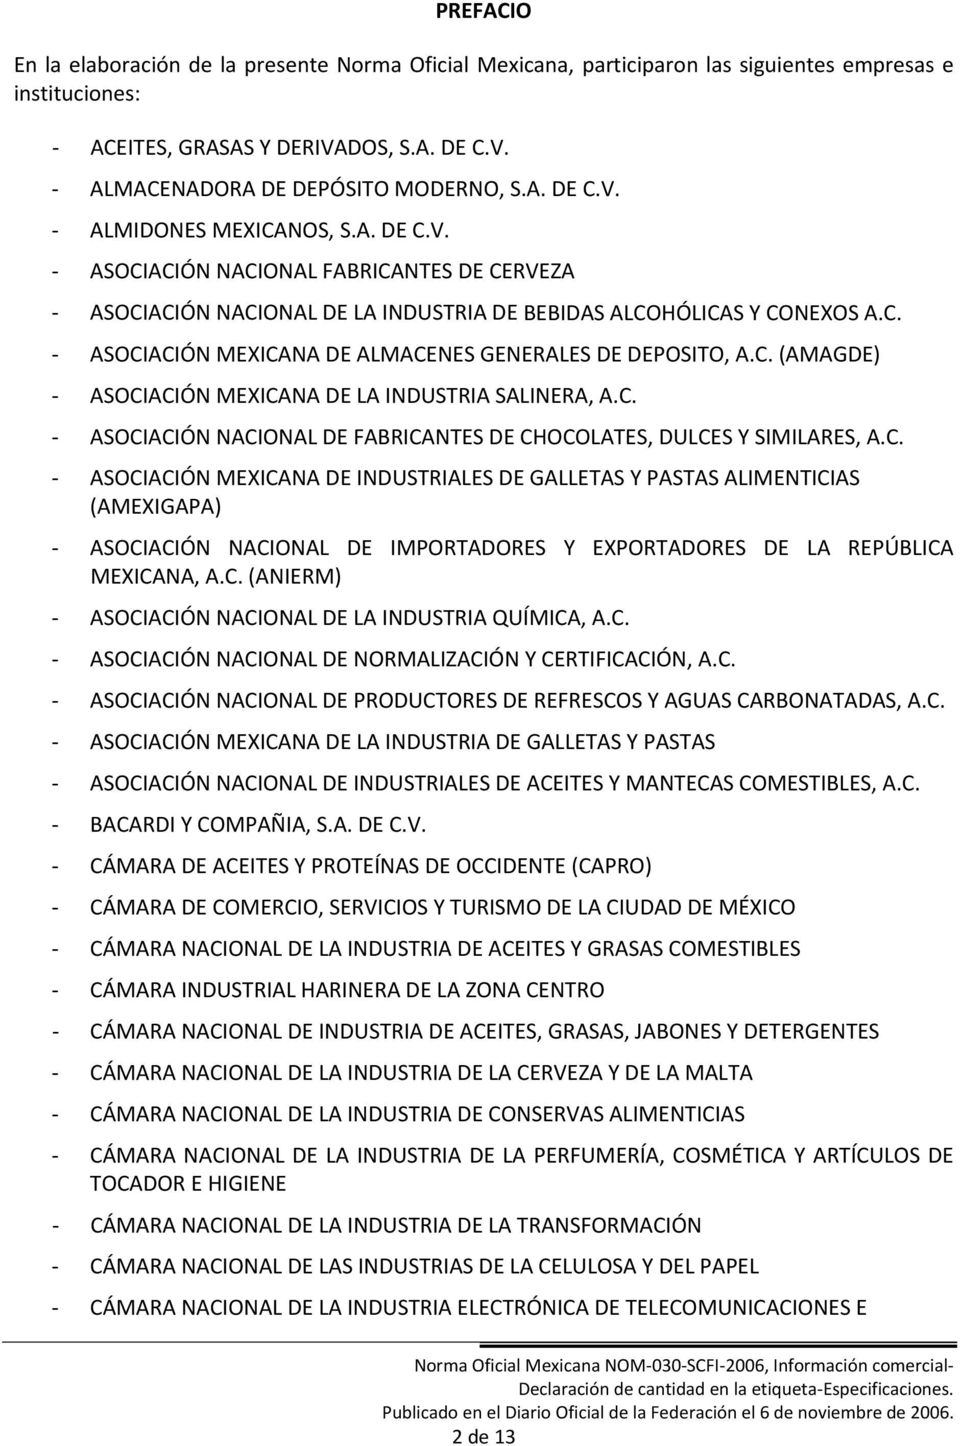 C. ASOCIACIÓN NACIONAL DE FABRICANTES DE CHOCOLATES, DULCES Y SIMILARES, A.C. ASOCIACIÓN MEXICANA DE INDUSTRIALES DE GALLETAS Y PASTAS ALIMENTICIAS (AMEXIGAPA) ASOCIACIÓN NACIONAL DE IMPORTADORES Y EXPORTADORES DE LA REPÚBLICA MEXICANA, A.